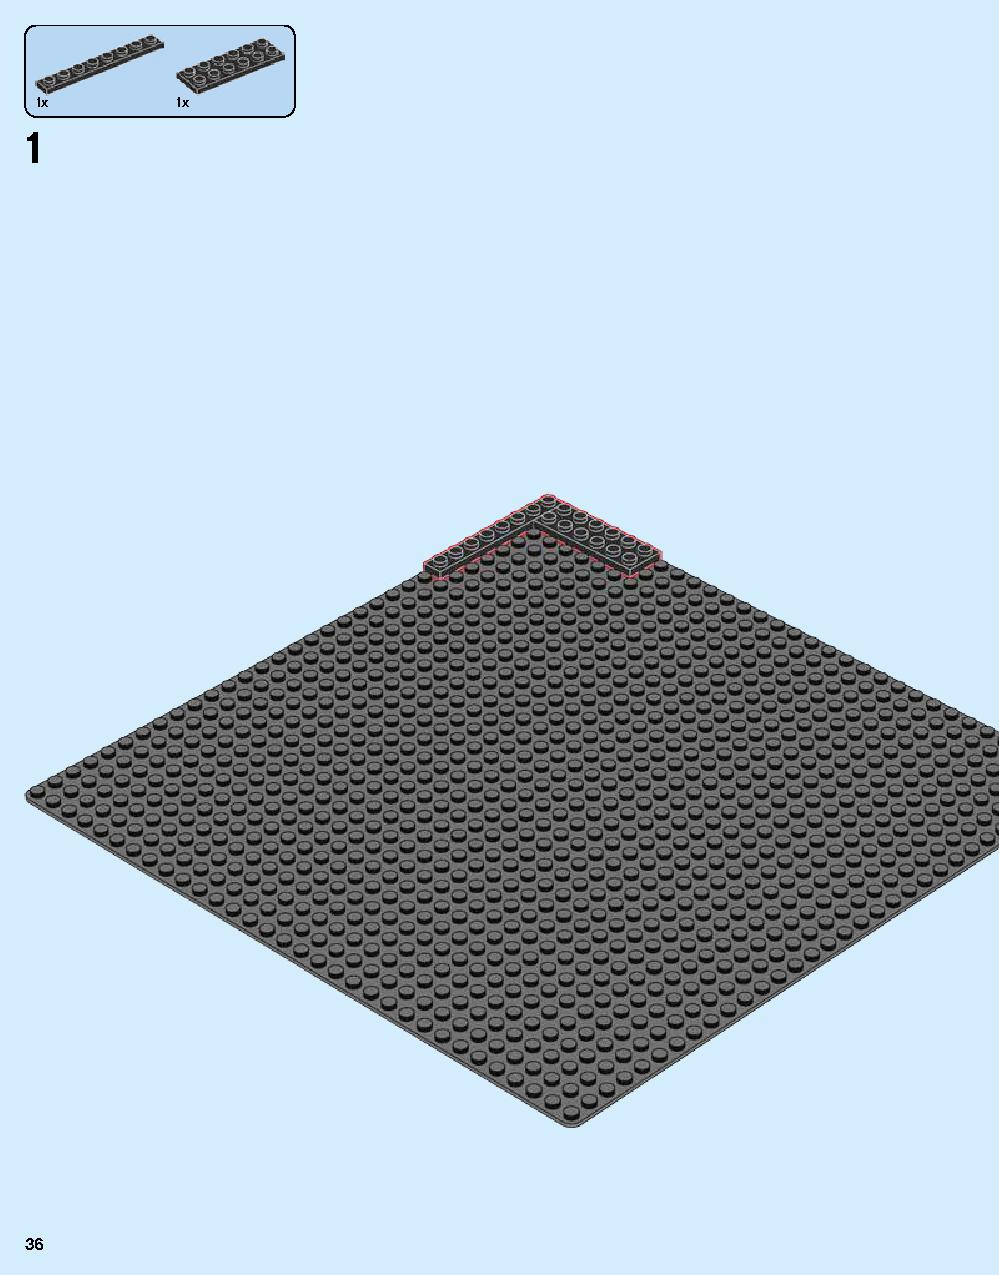 닌자고® 시티 70620 레고 세트 제품정보 레고 조립설명서 36 page